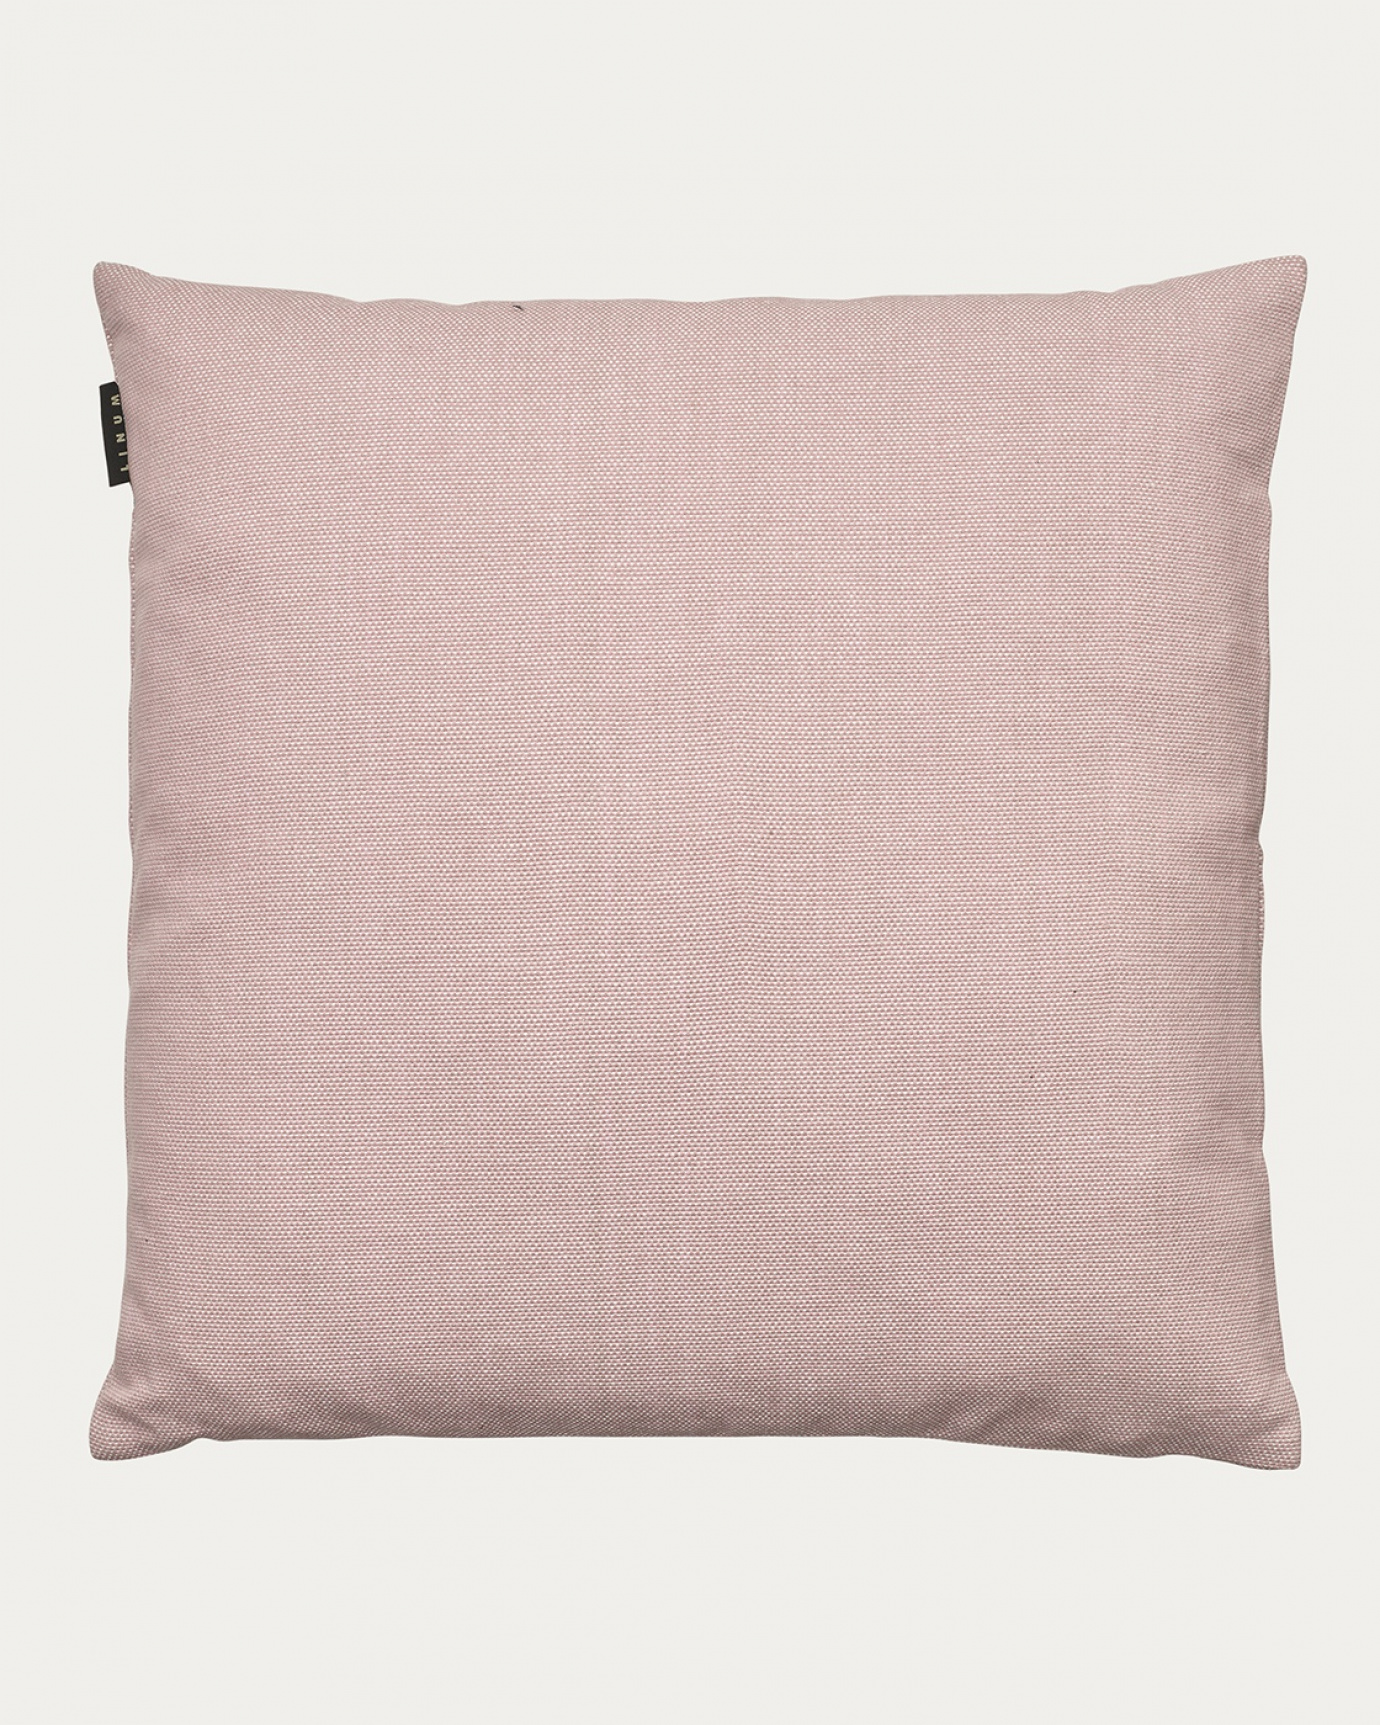 Produktbild dammig rosa PEPPER kuddfodral av mjuk bomull från LINUM DESIGN. Lätt att tvätta och hållbar genom generationer. Storlek 60x60 cm.